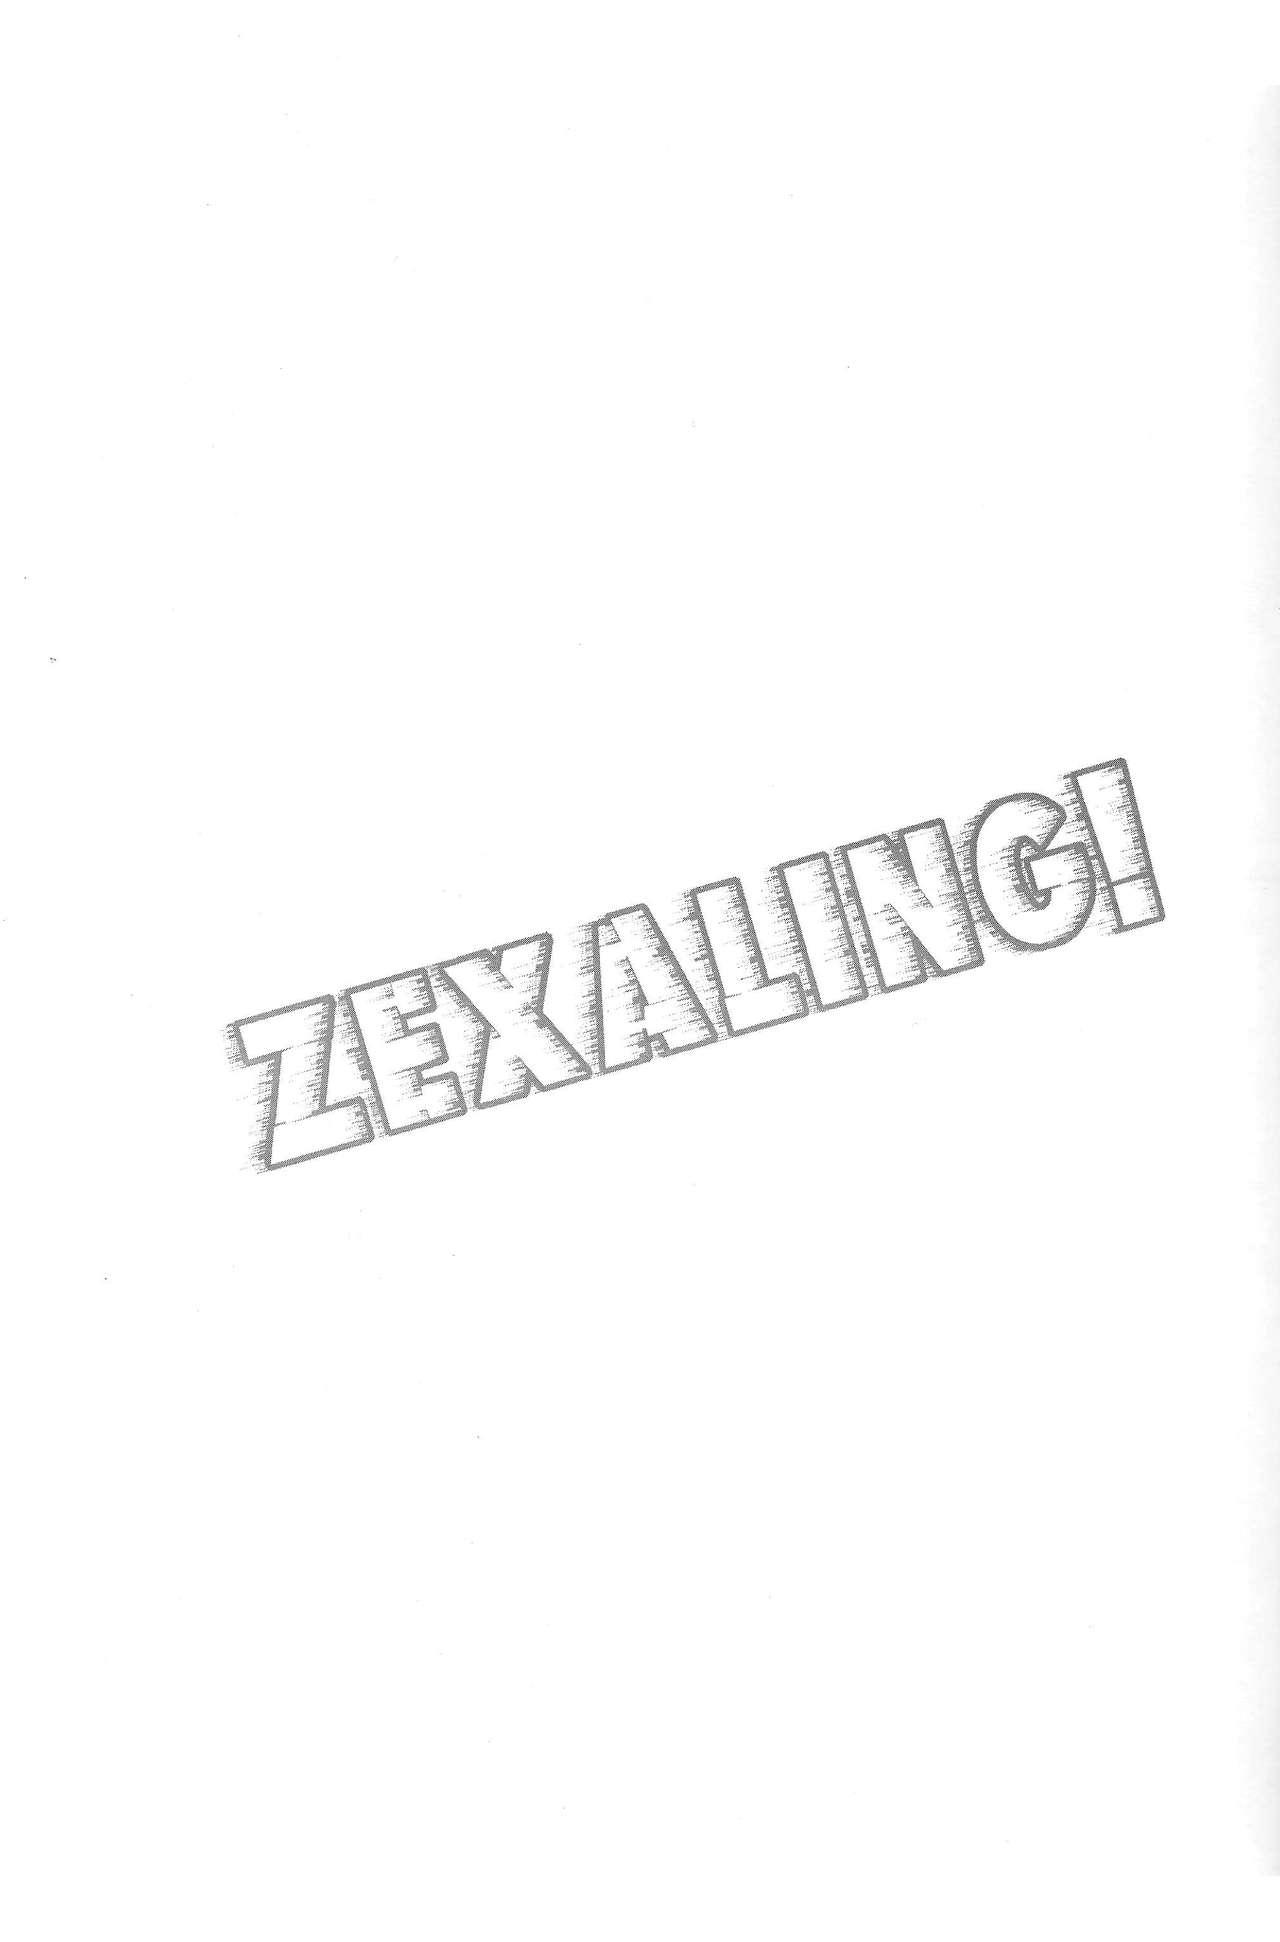 Creampie ZEXALING! - Yu-gi-oh zexal Creampies - Page 2